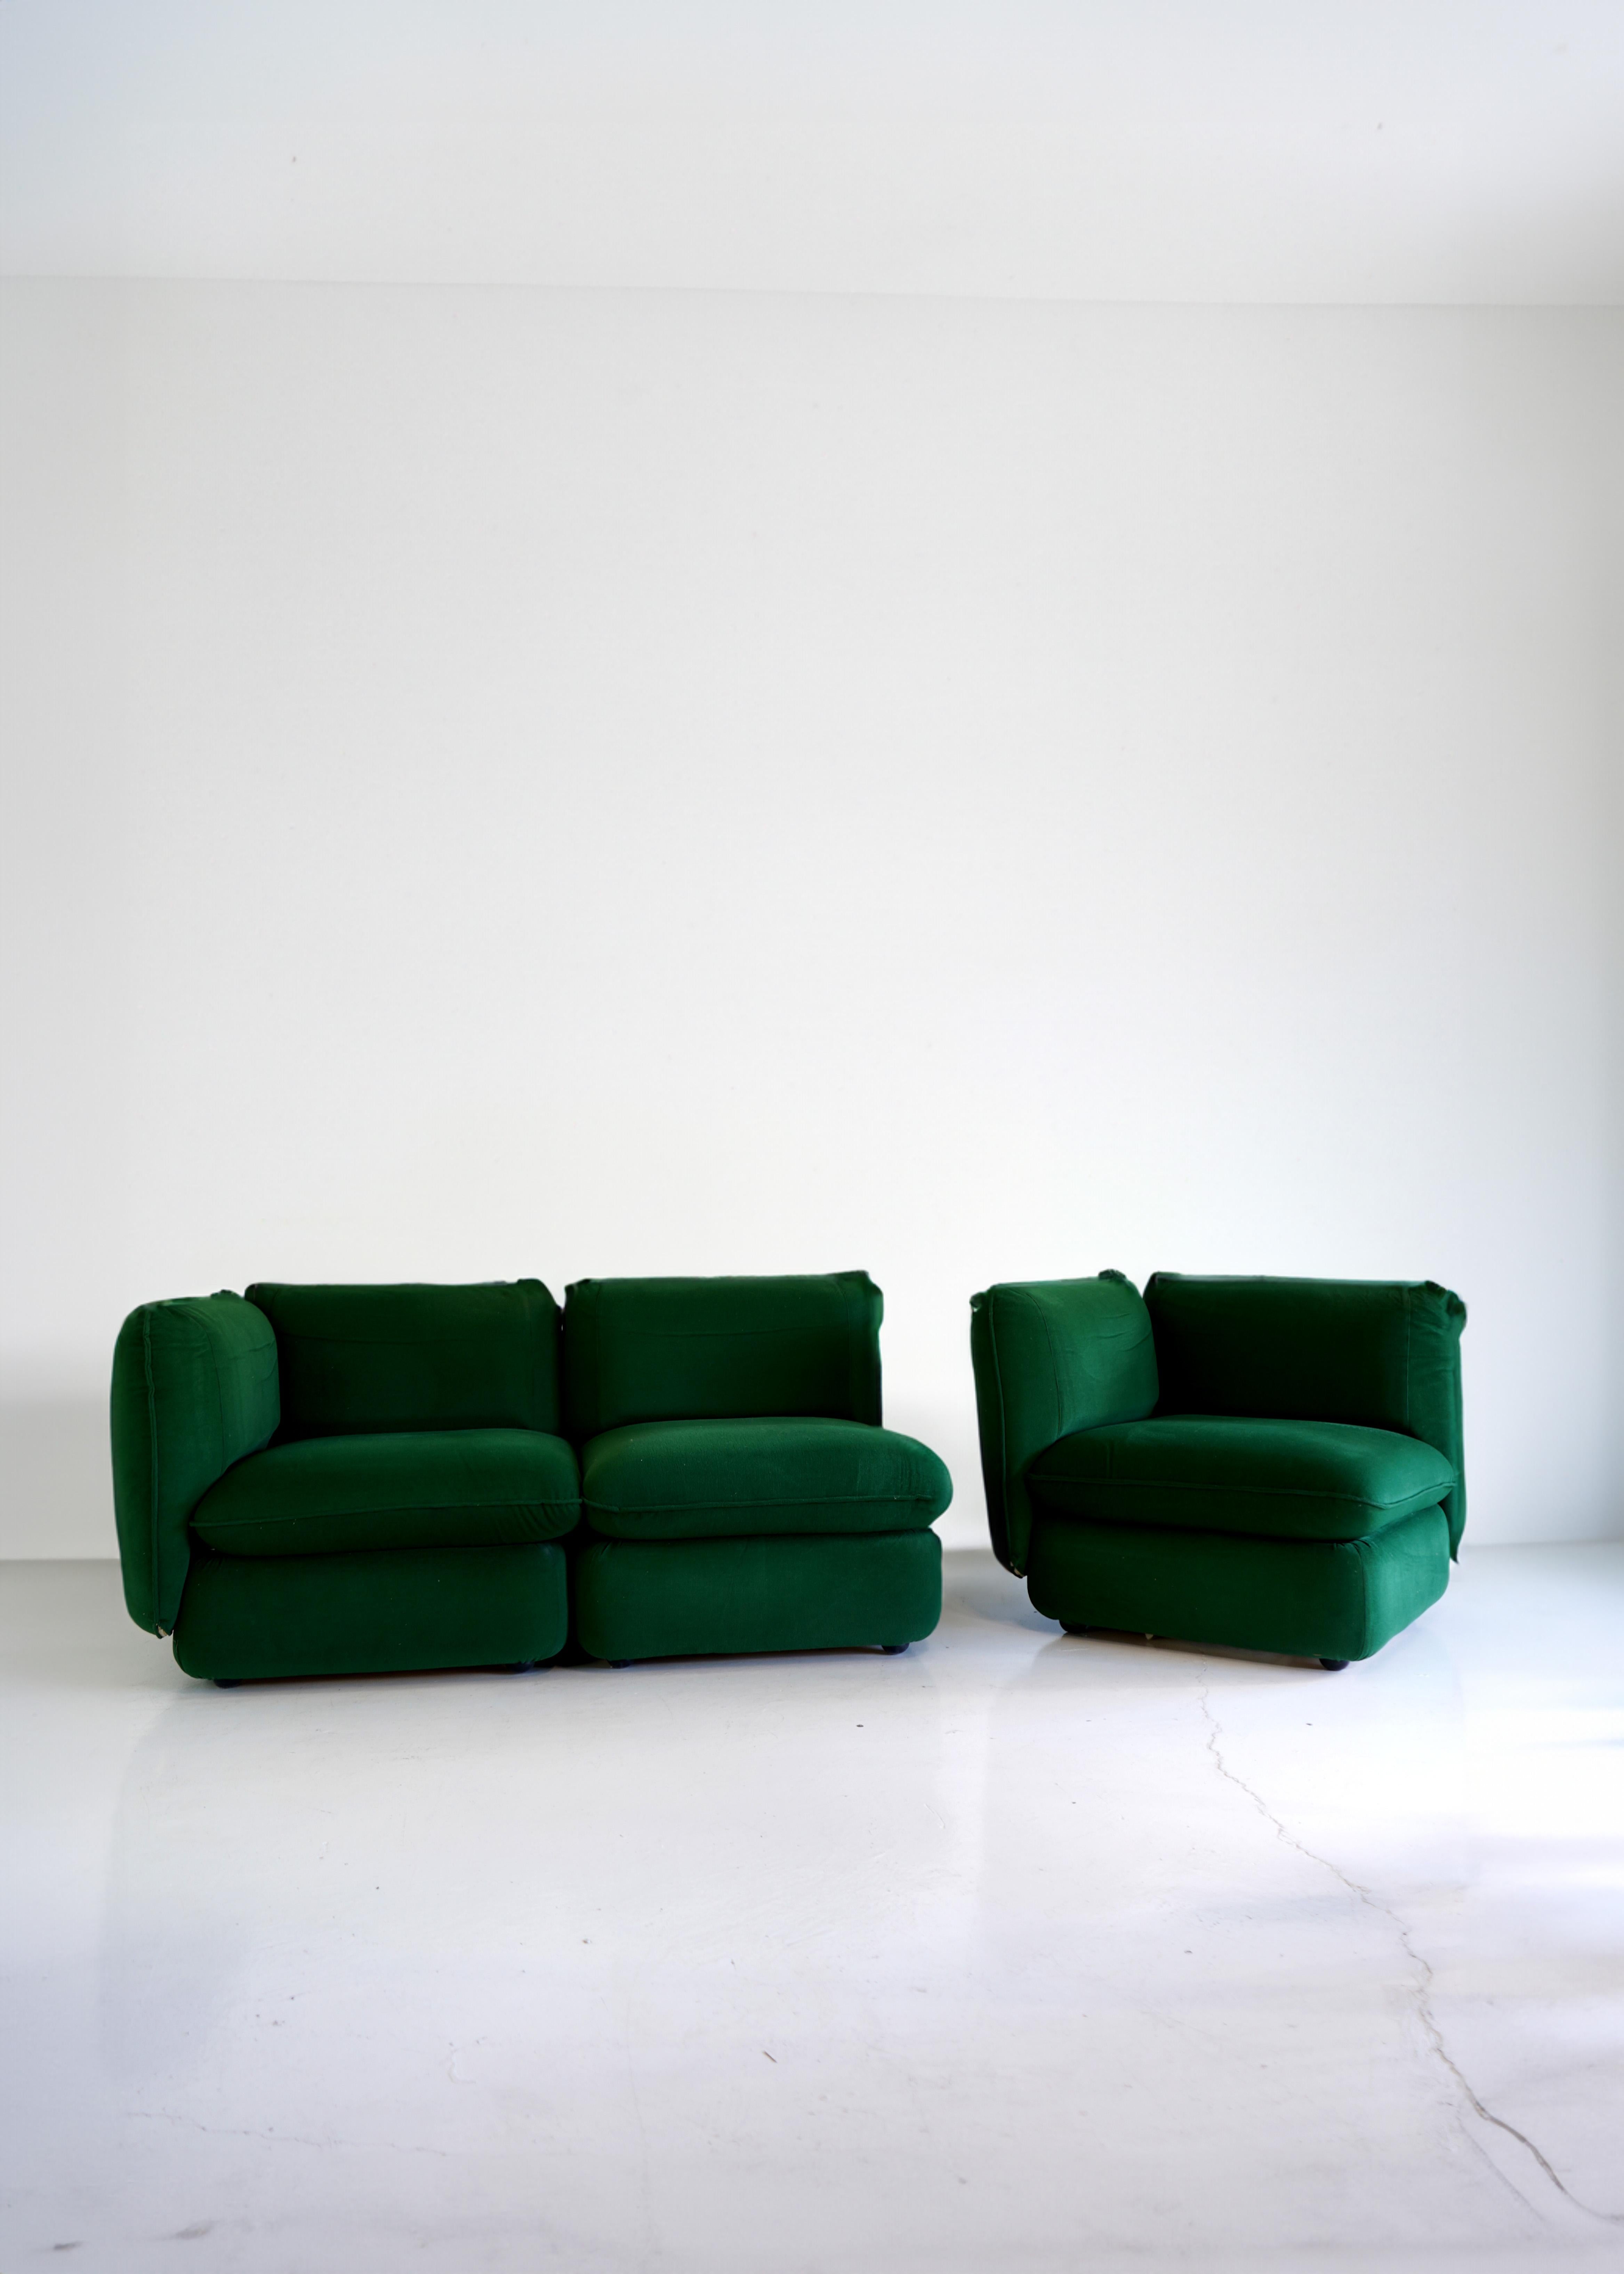 Perfekte Proportionen bei diesem schönen und seltenen modularen Design von IPE Cavalli in wunderschönem, tiefem Smaragdgrün aus Chenille. Dezente Silhouette und gepolsterte Kissen. Can als mehrere Stühle aufgestellt werden, indem die Armlehnen von